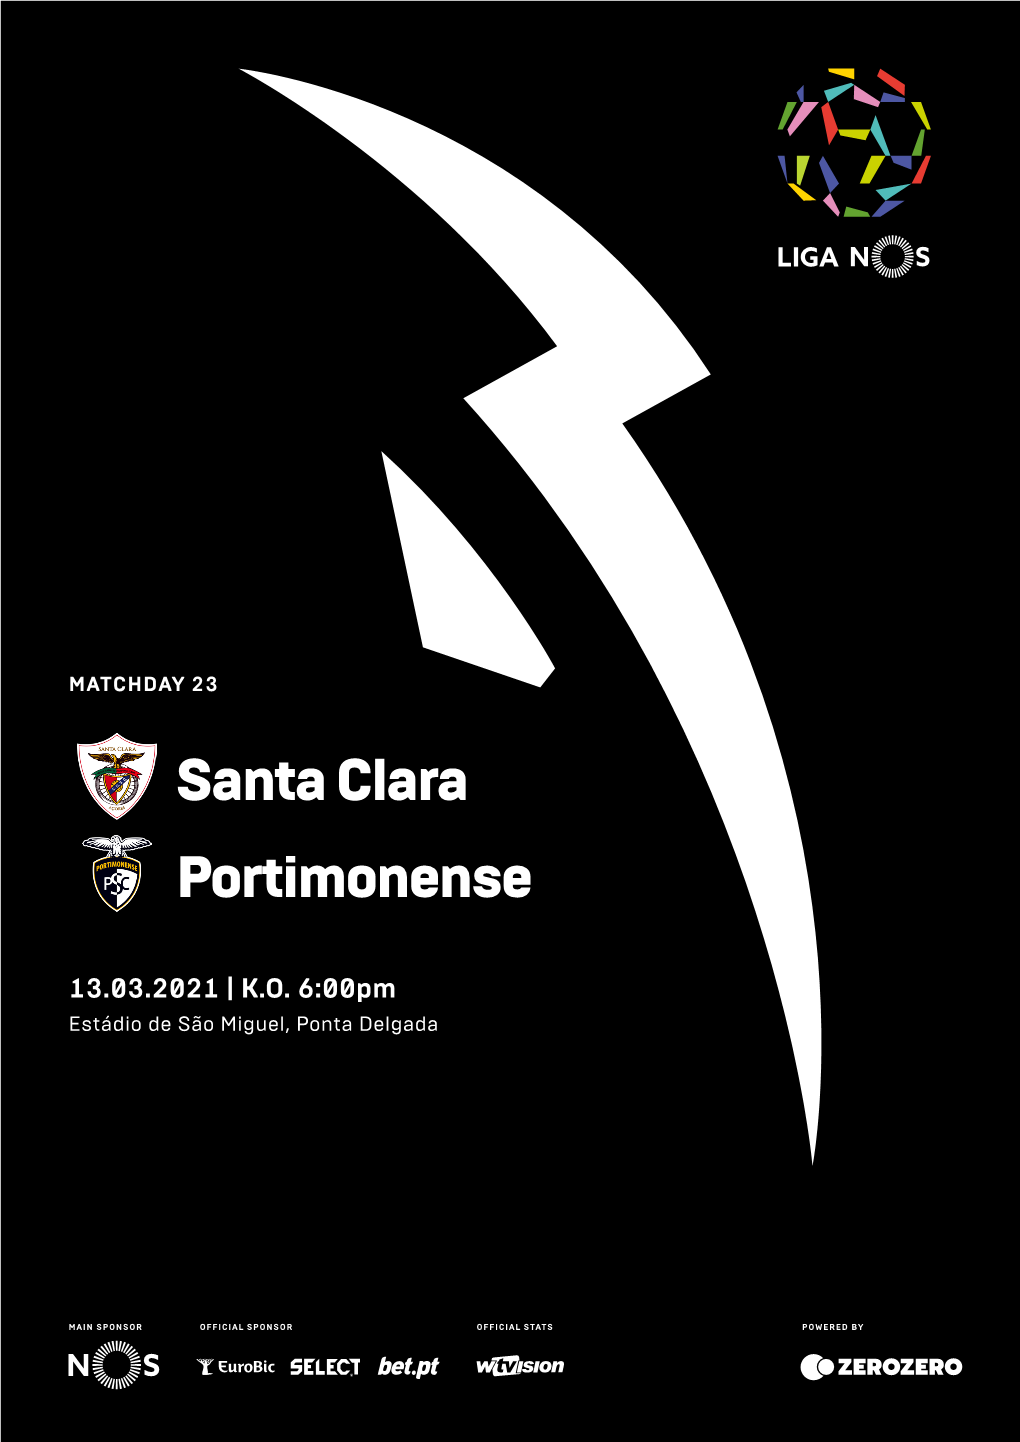 Santa Clara Portimonense